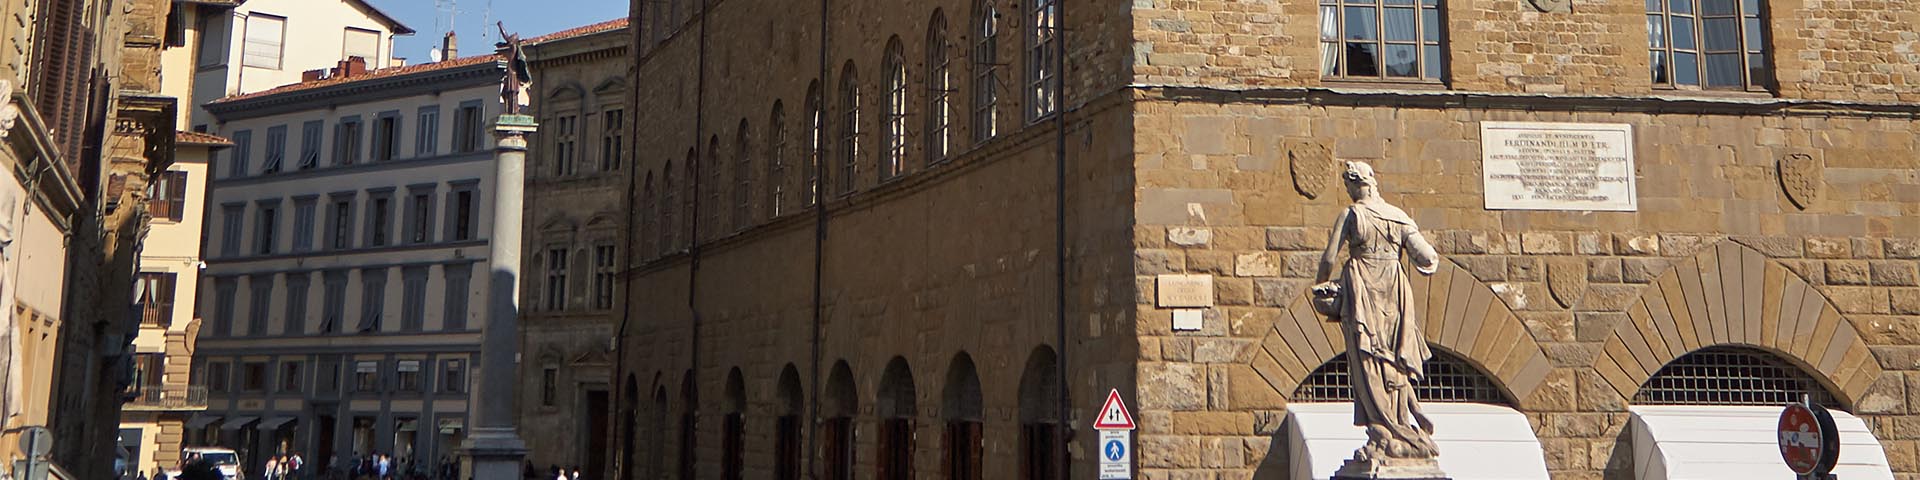 Palazzo Feroni-Ferragamo